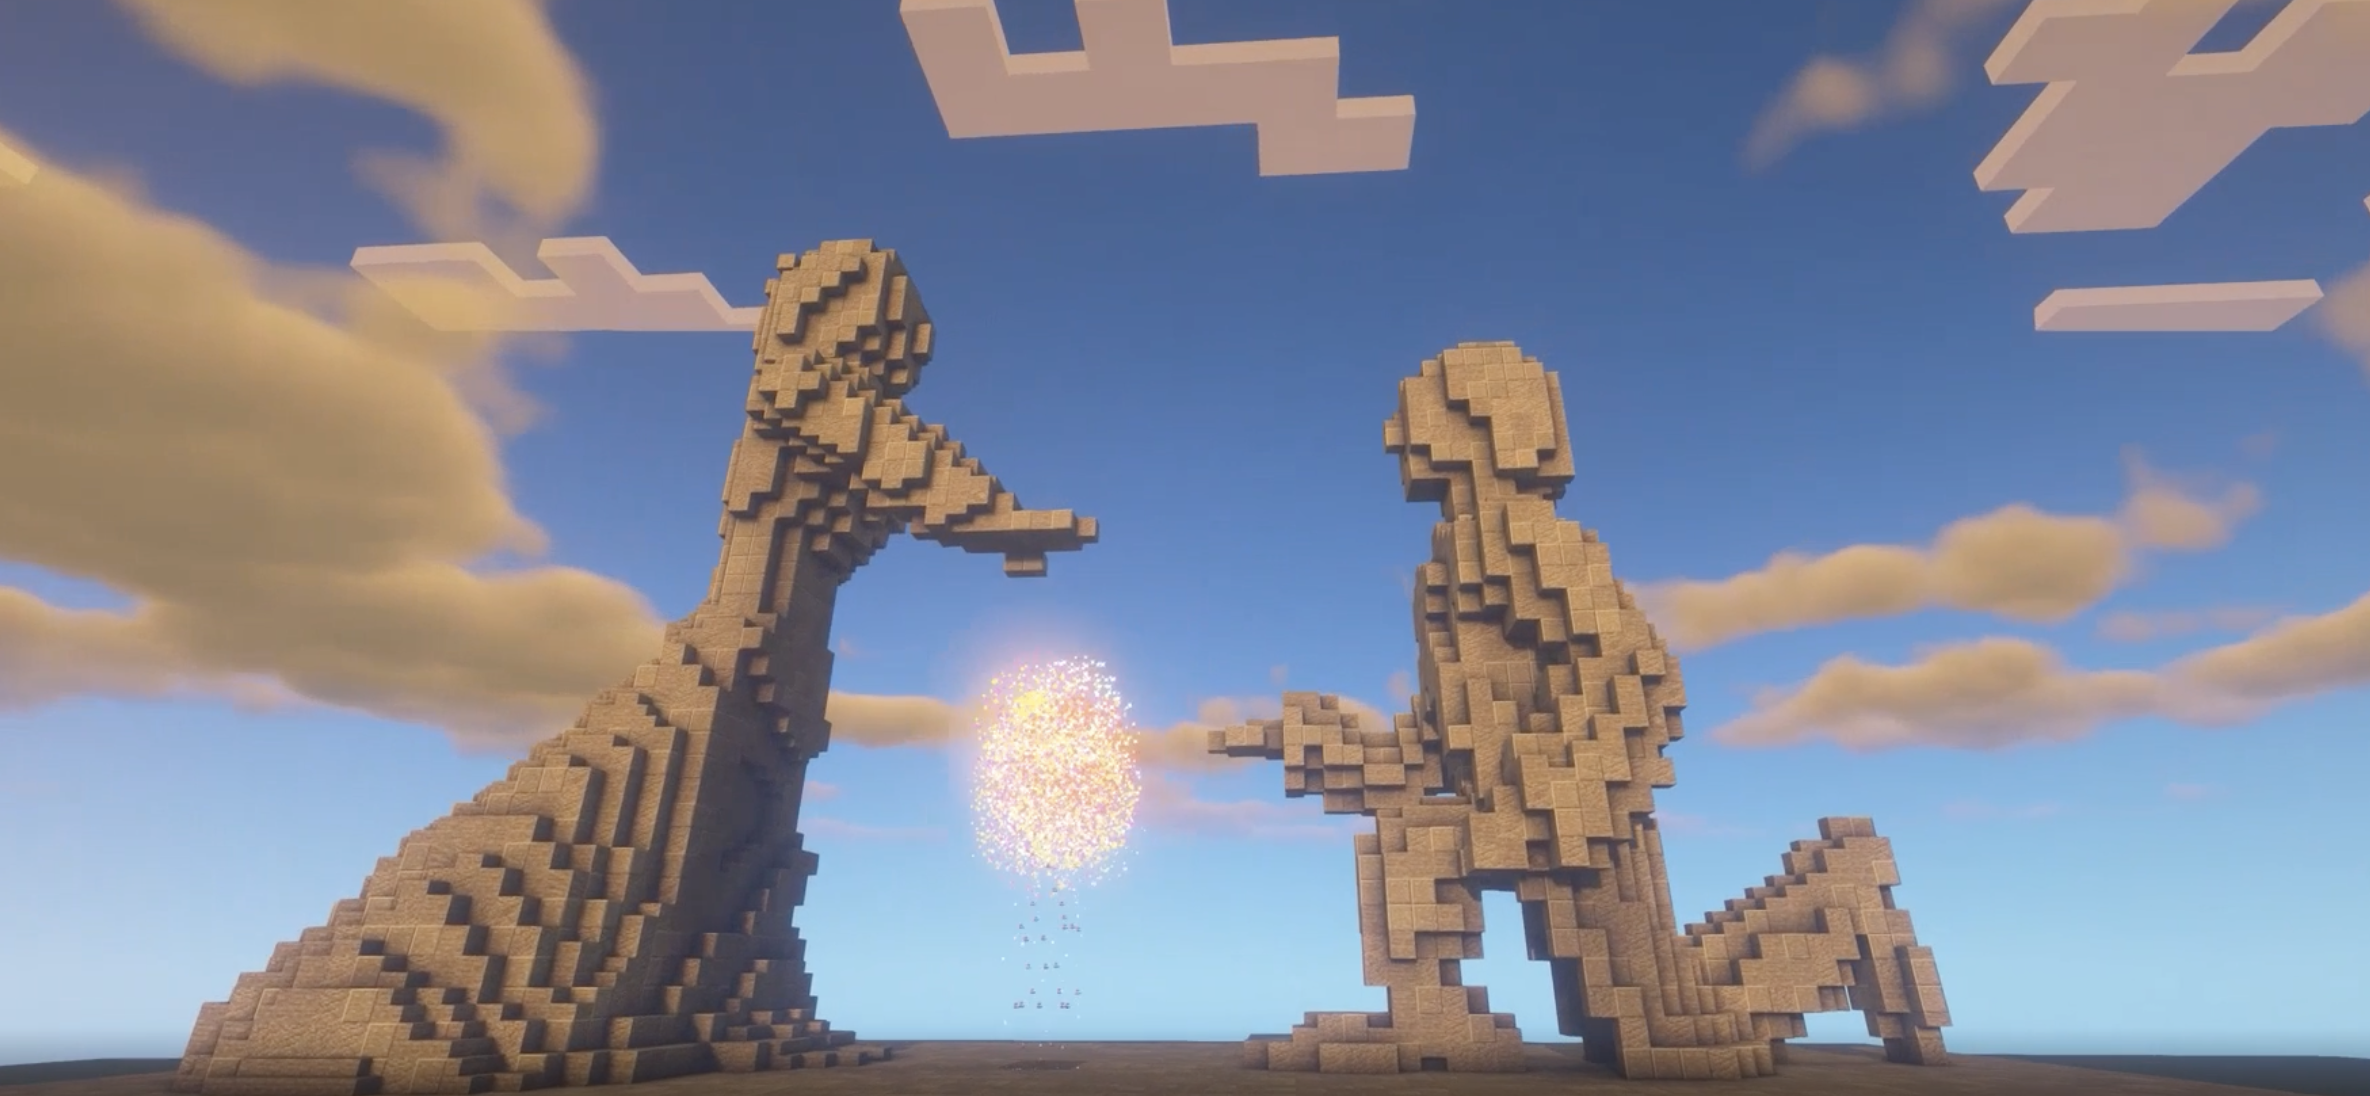 Накануне 8 июля активистка РДШ создала в игре Minecraft памятник семье